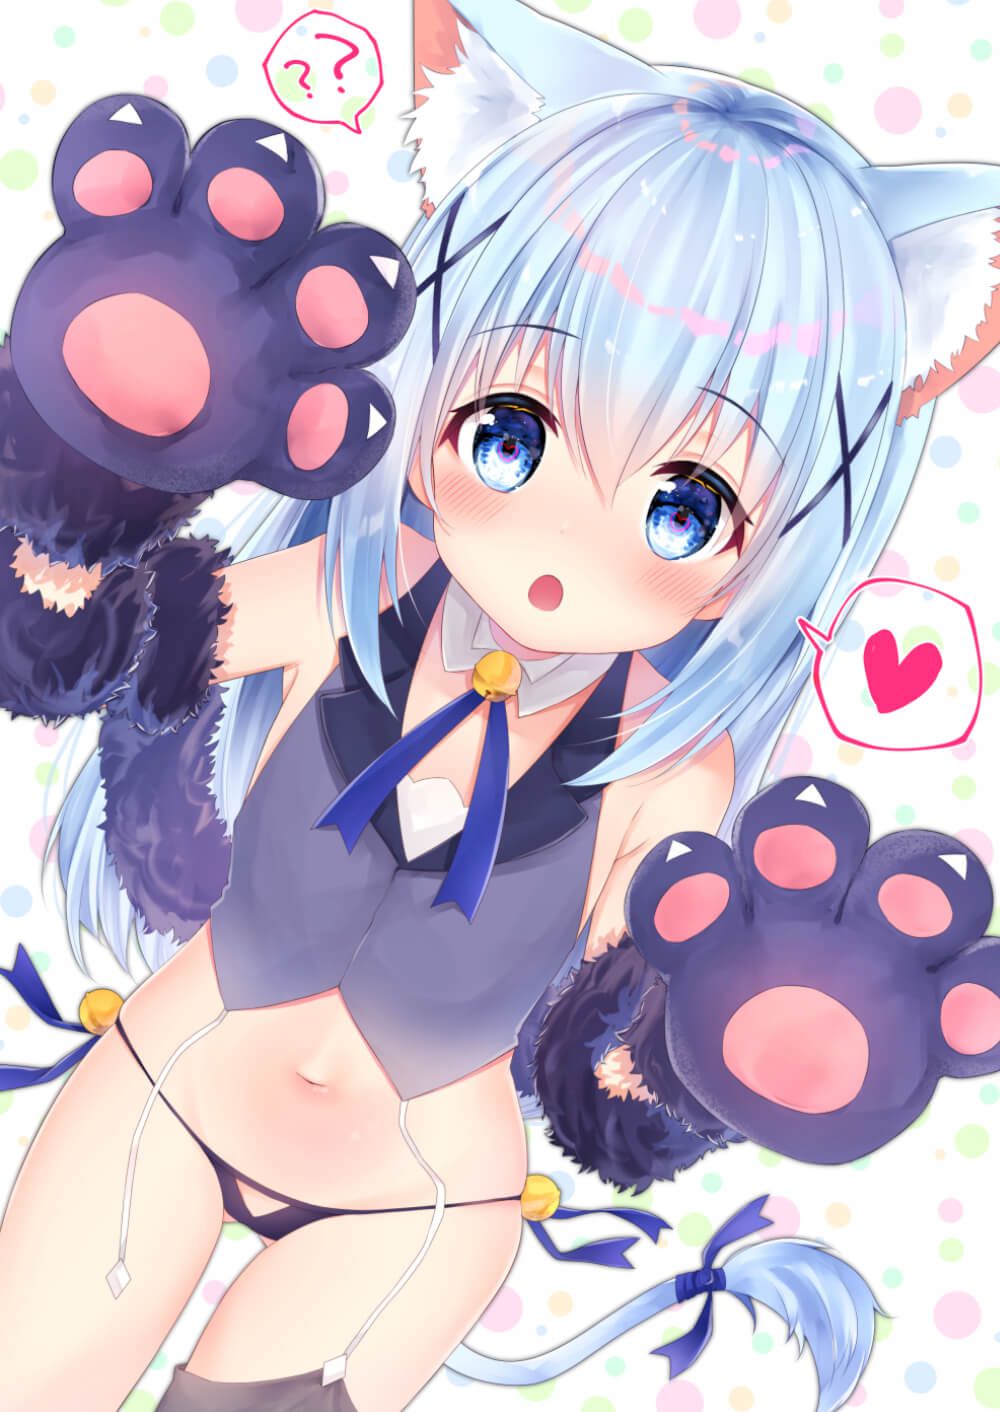 Ilya-chan is lori cute! JS Erotic Images 6